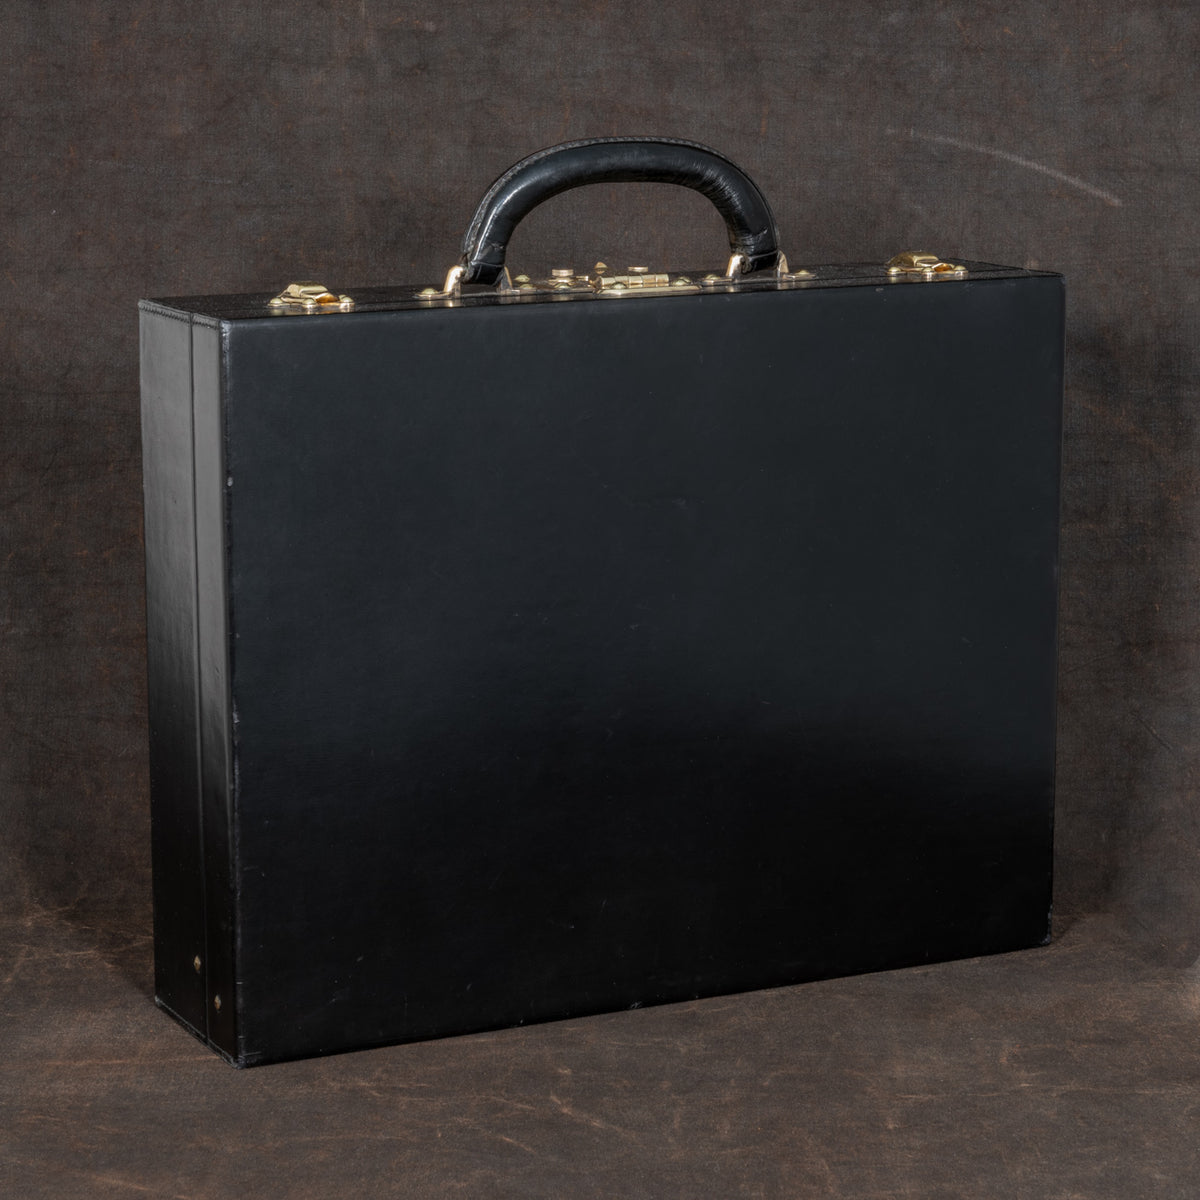 Vintage Louis Vuitton Briefcase Attache